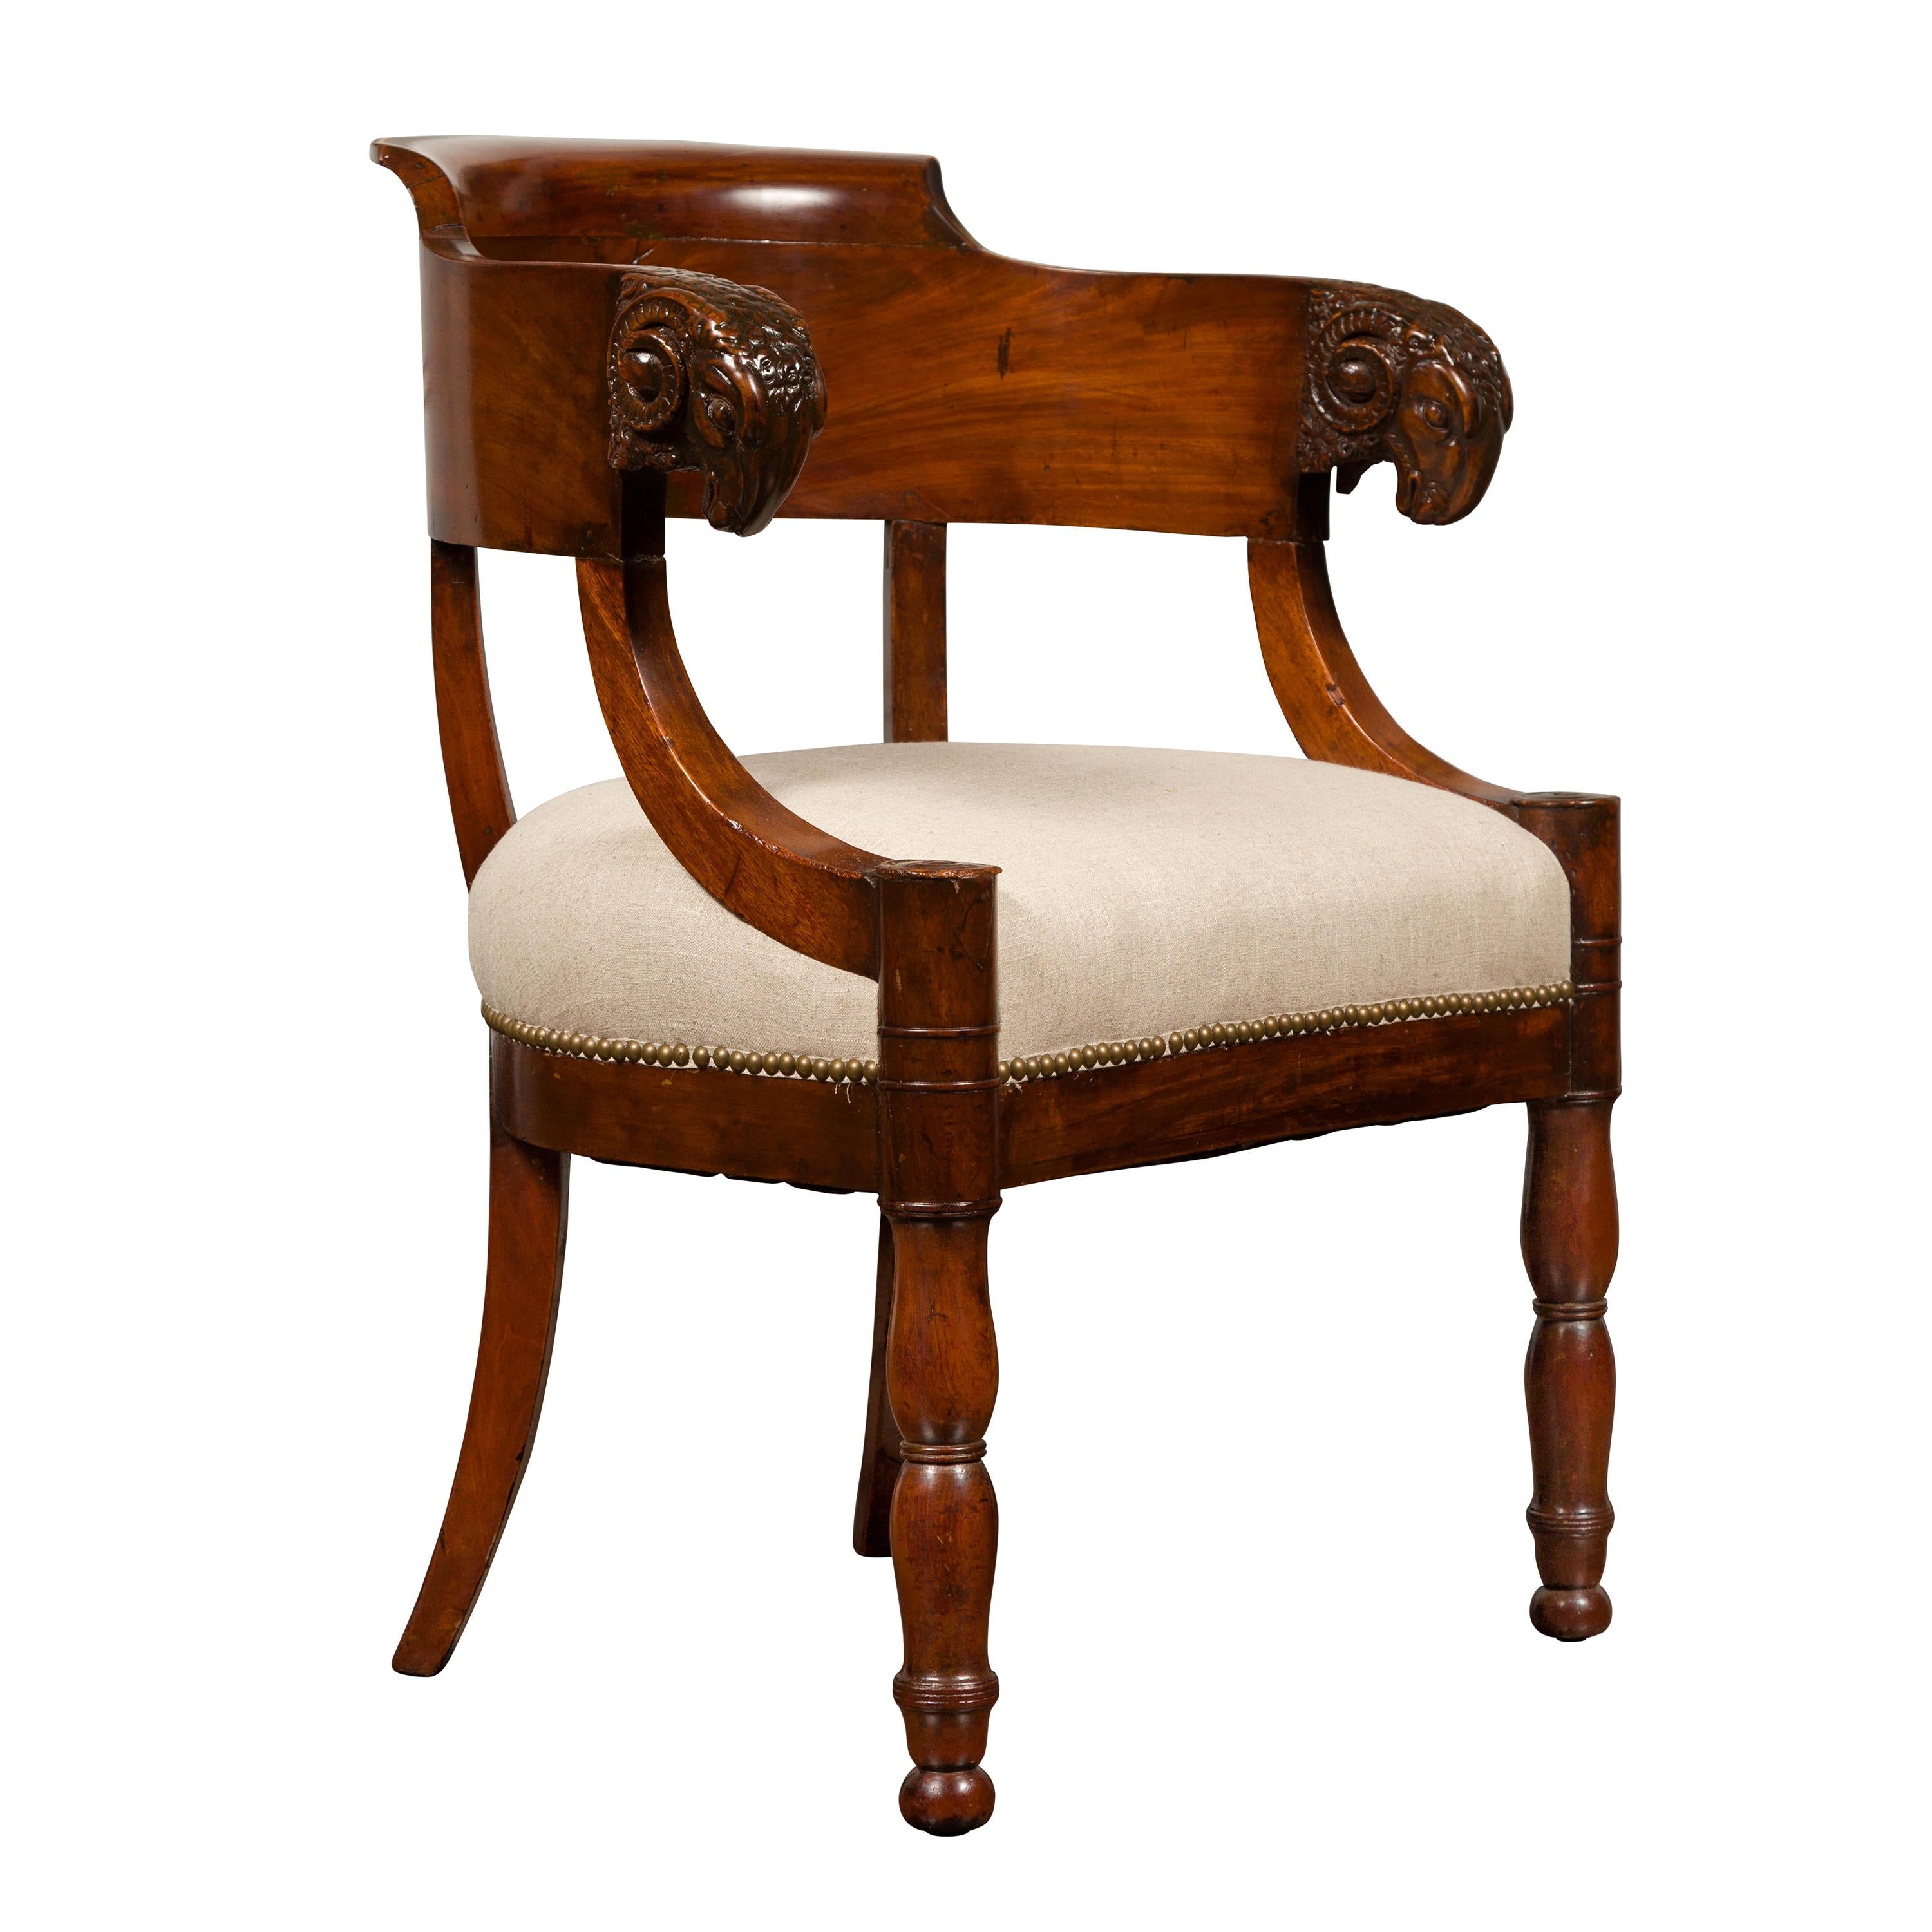 Französischer Mahagoni-Sessel aus der Restaurationszeit der 1830er Jahre mit geschnitzten Widderköpfen